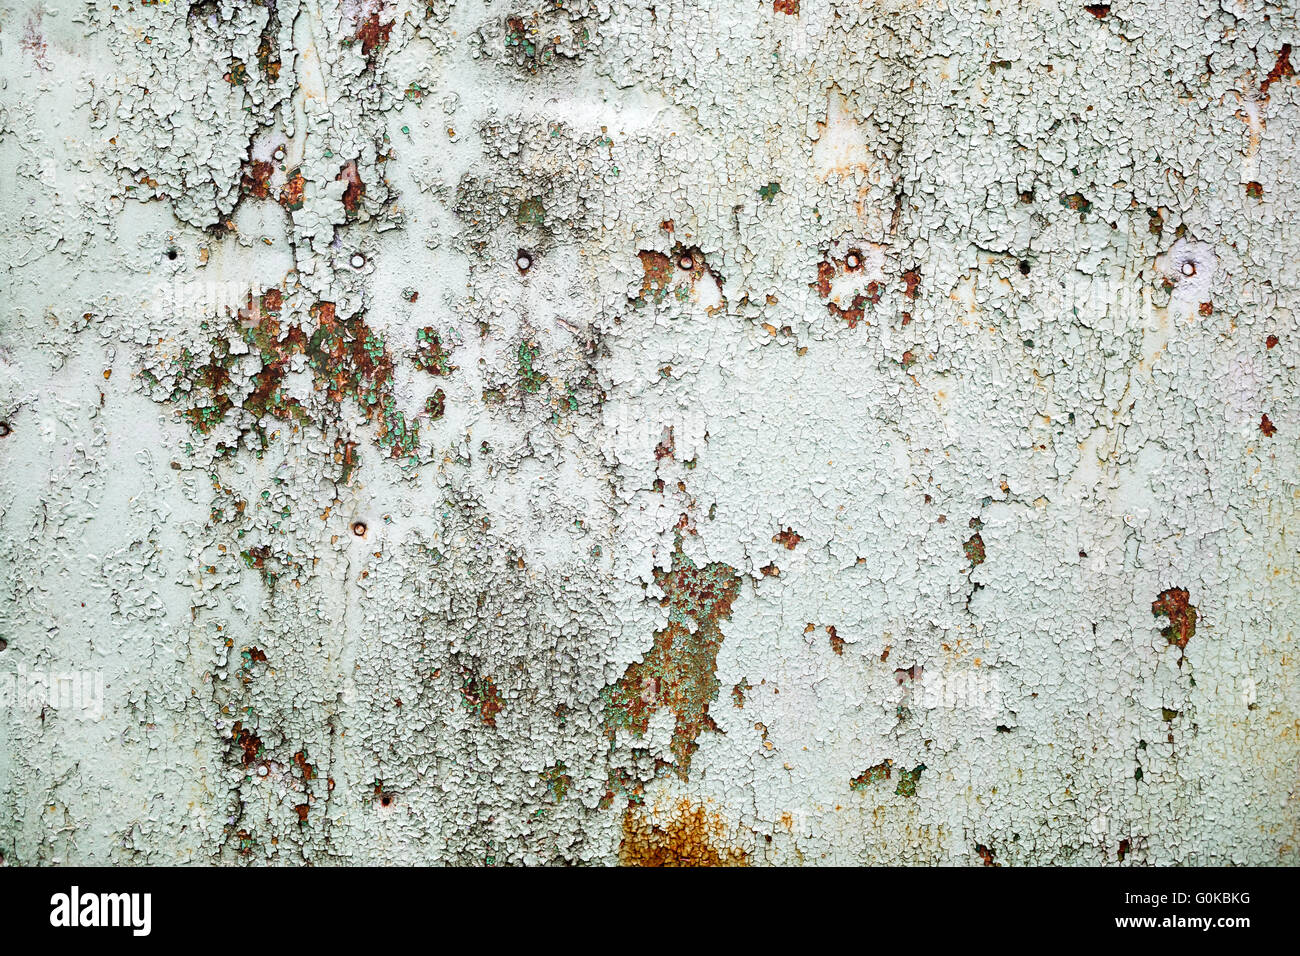 Hintergrund der alten abblätternde Farbe mit Rissen und Rost. Alten verwitterten Peeling Paint Textur. Stockfoto